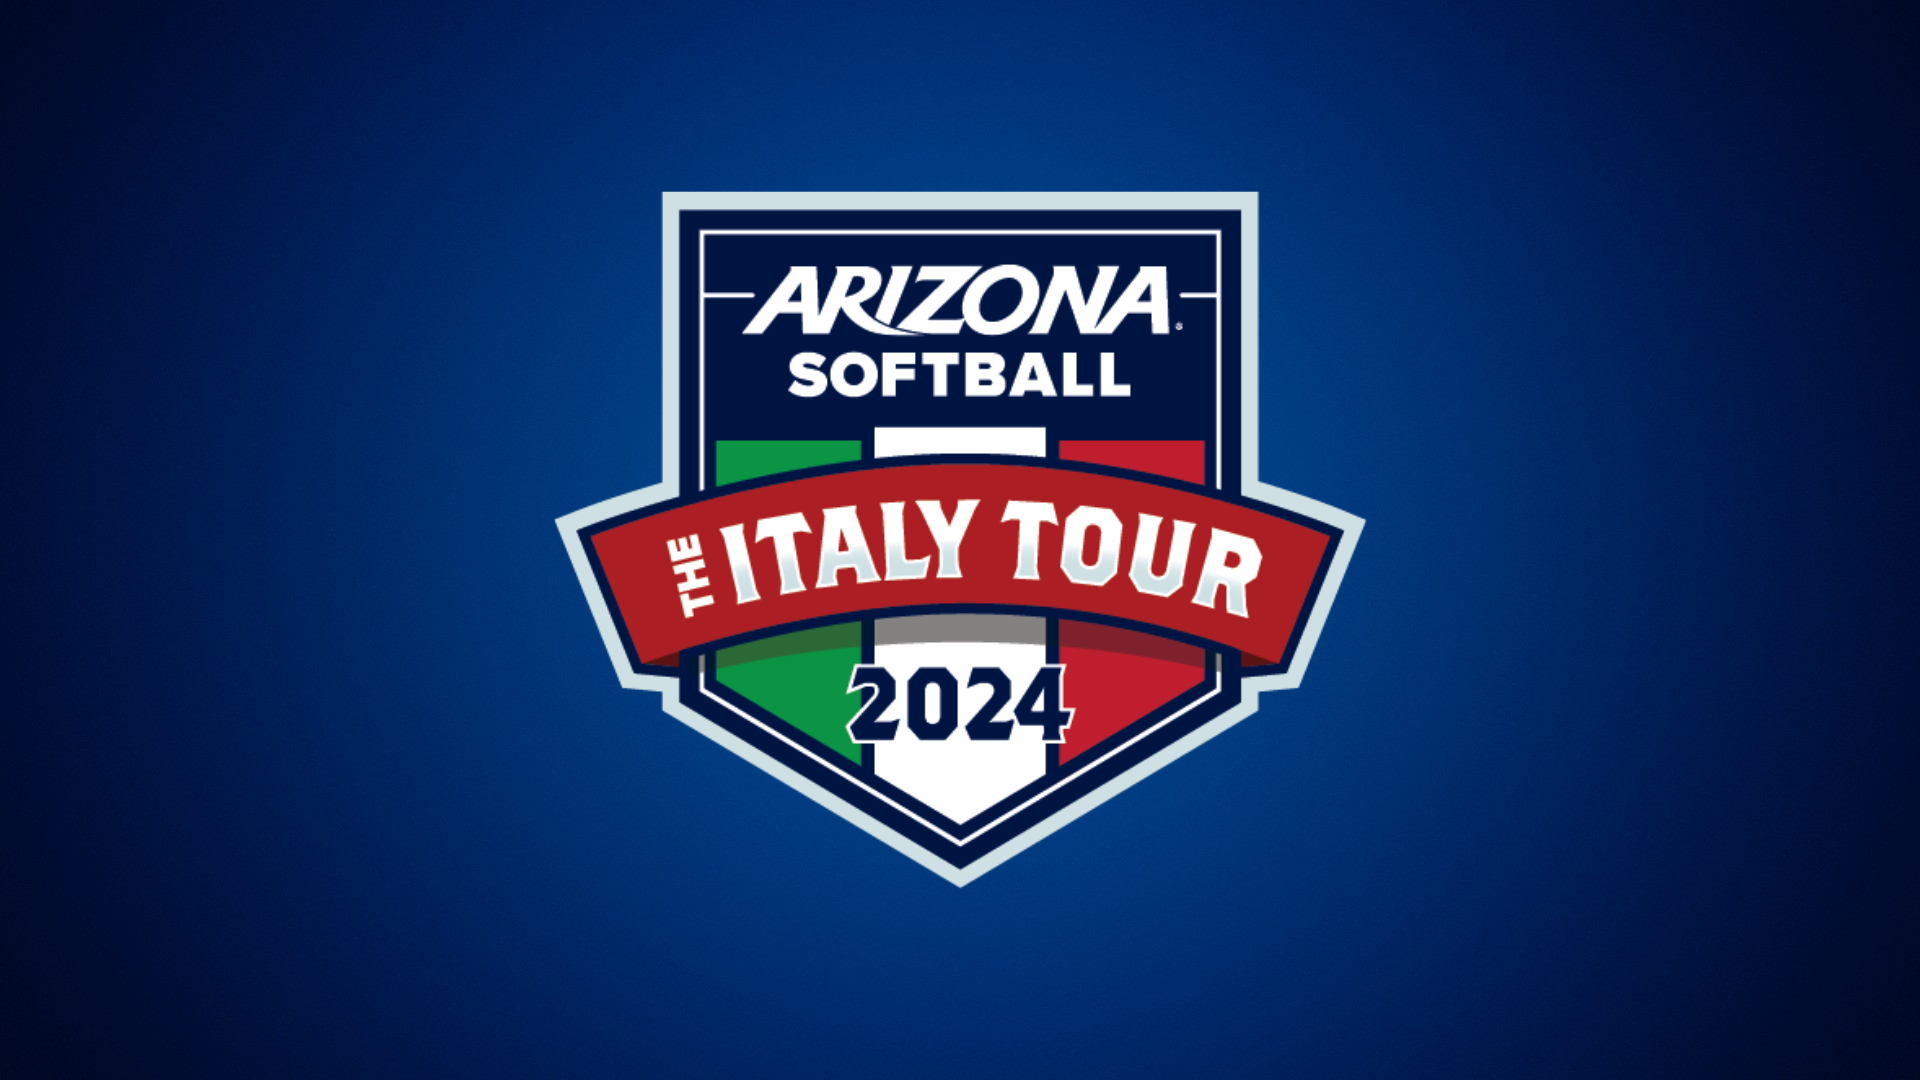 Arizona Softball's Epic Foreign Tour to Italy